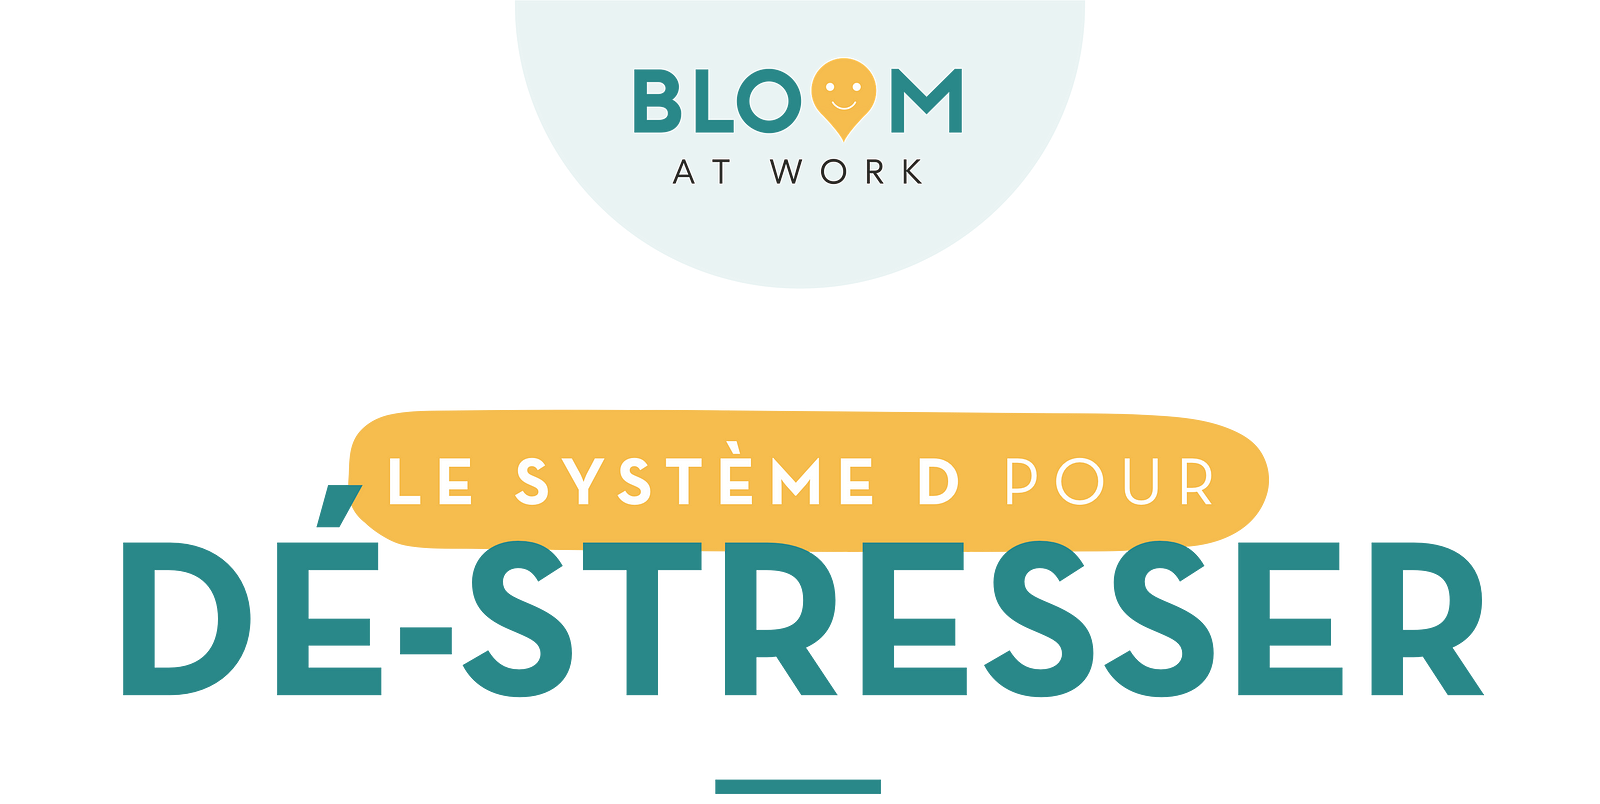 Stress au travail - l'infographie de Bloom at work